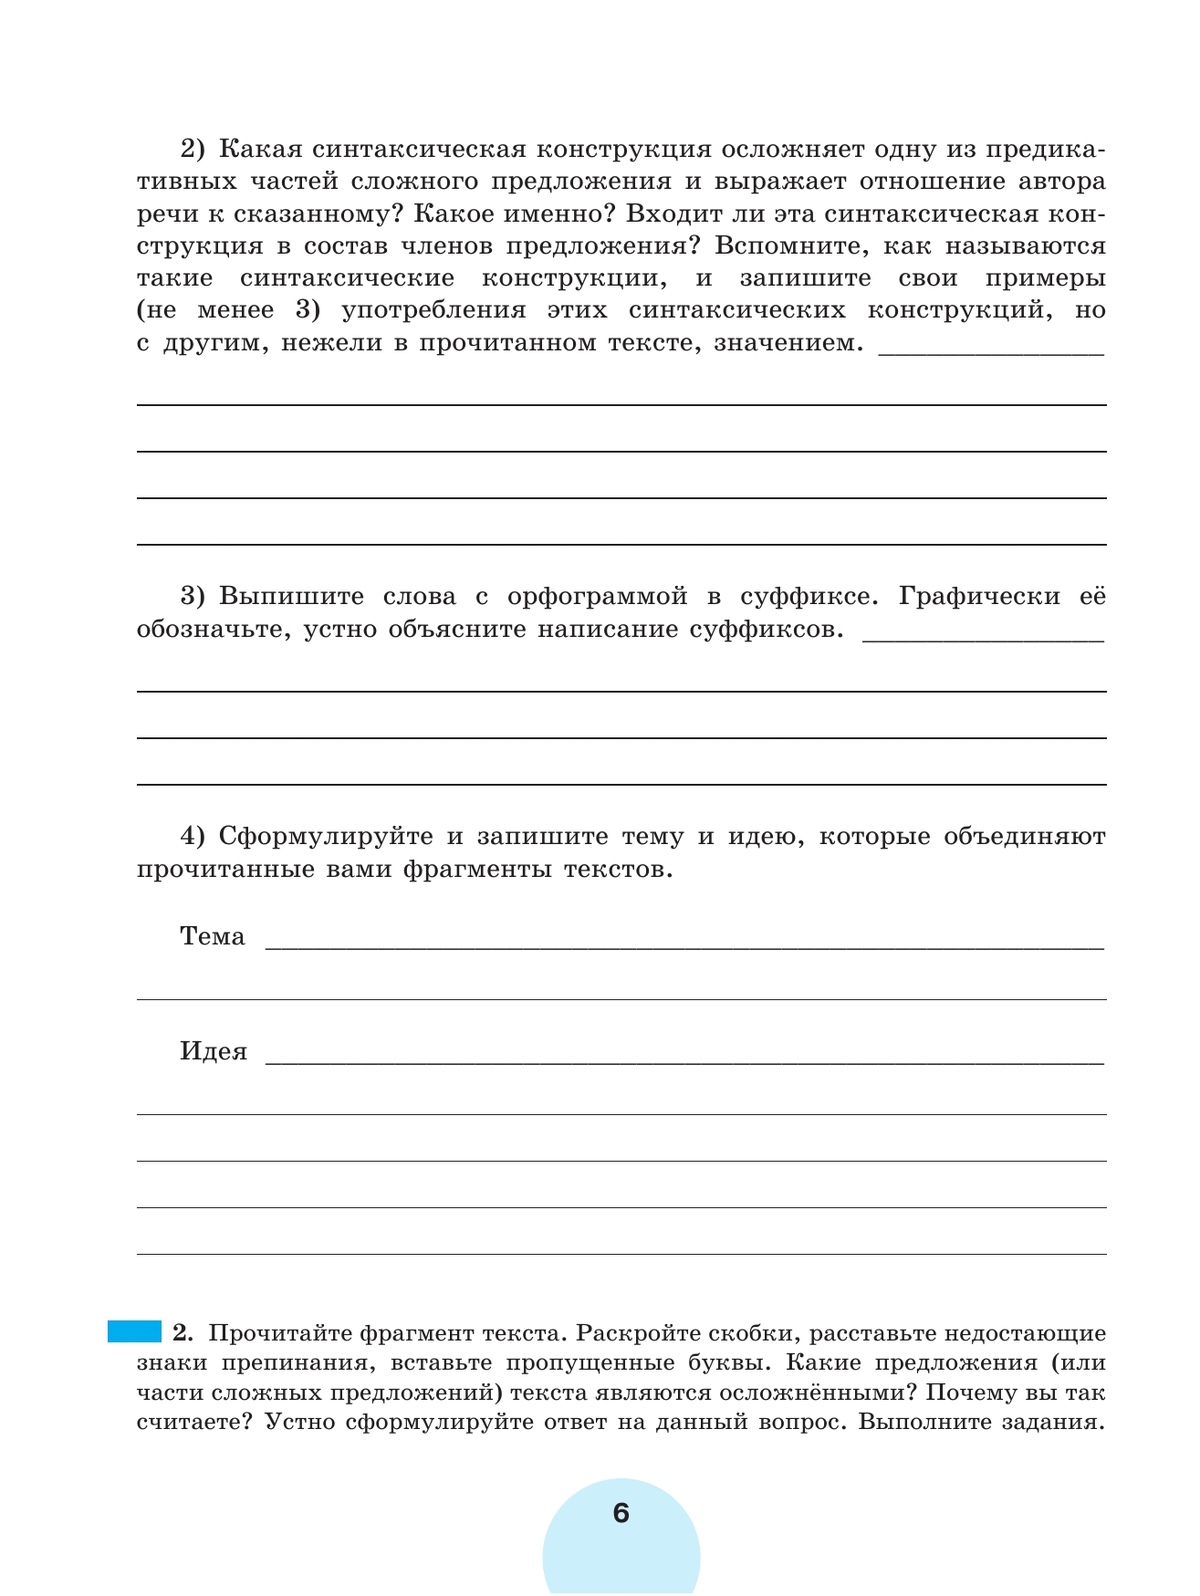 Русский язык. Рабочая тетрадь. 8 класс. В 2 ч. Часть 2 5